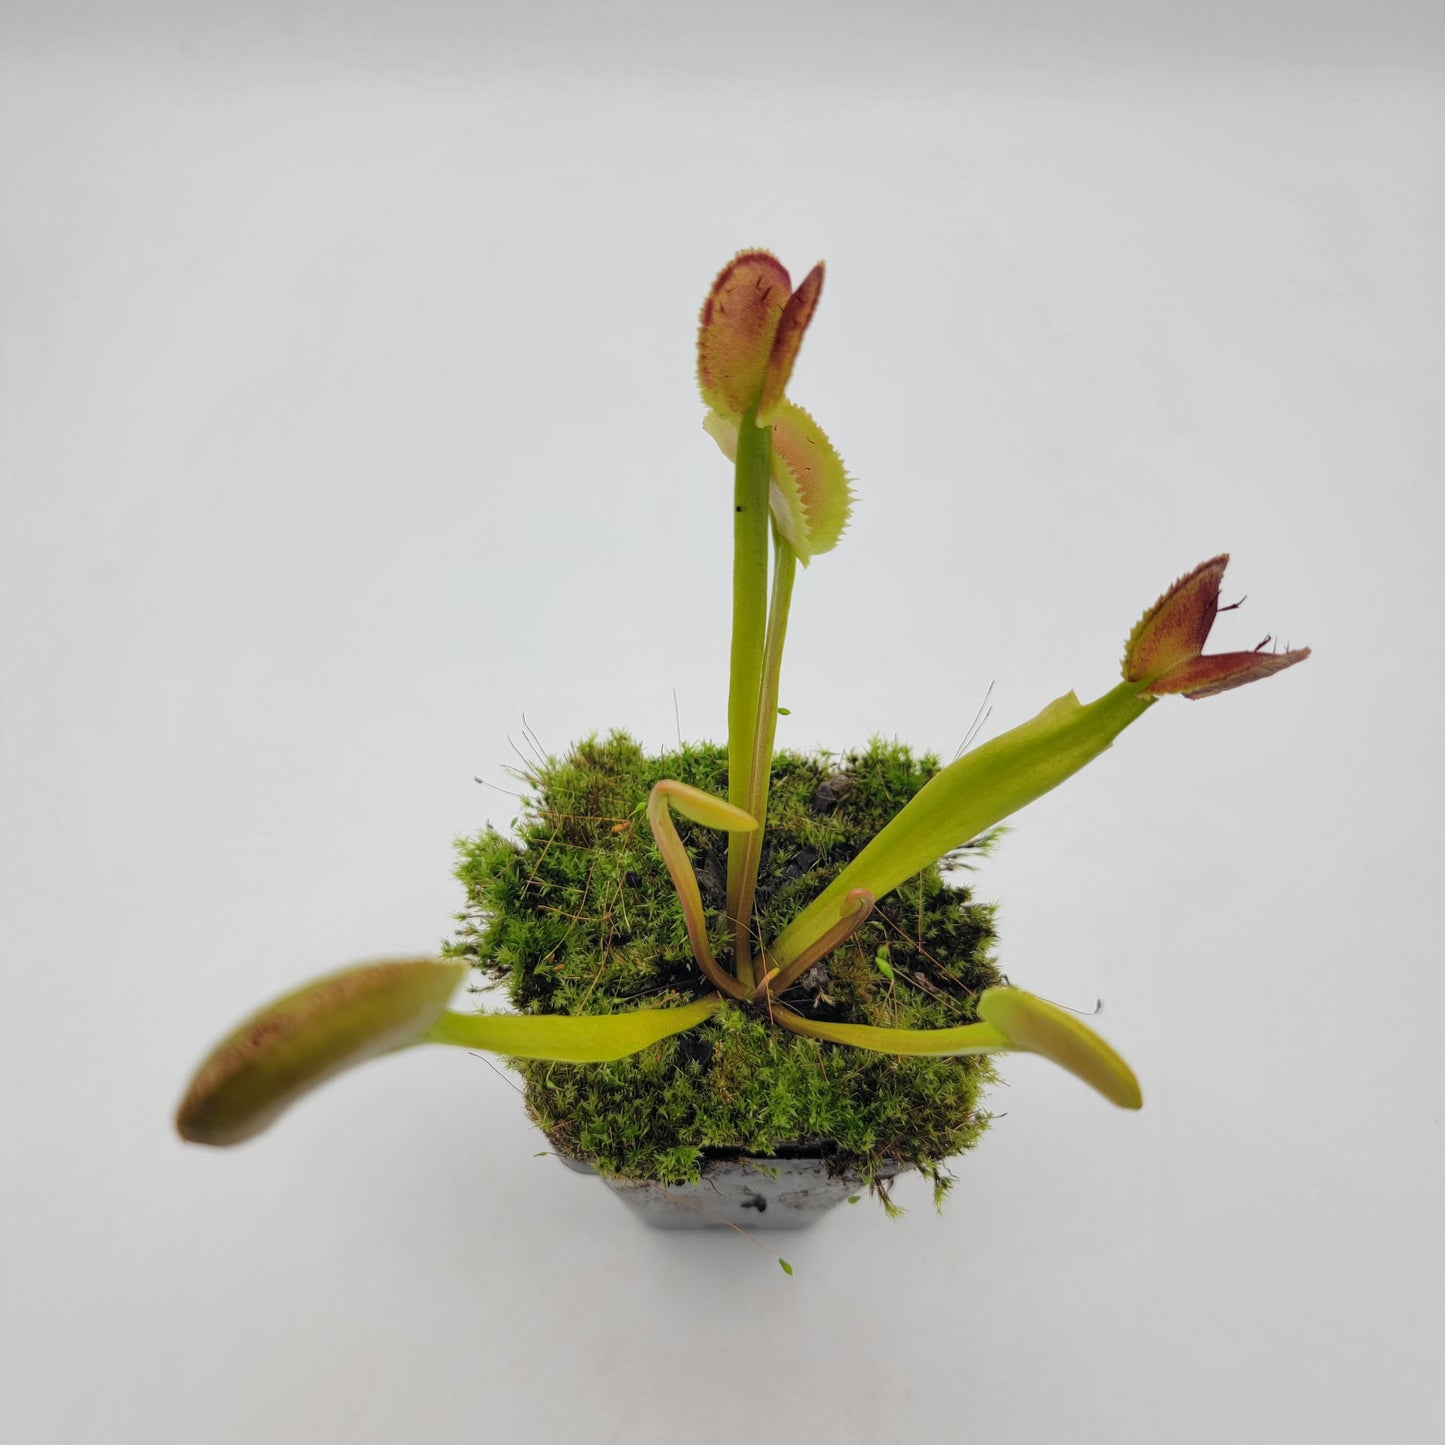 Venus flytrap (Dionaea muscipula) "FTS Trigger Happy"